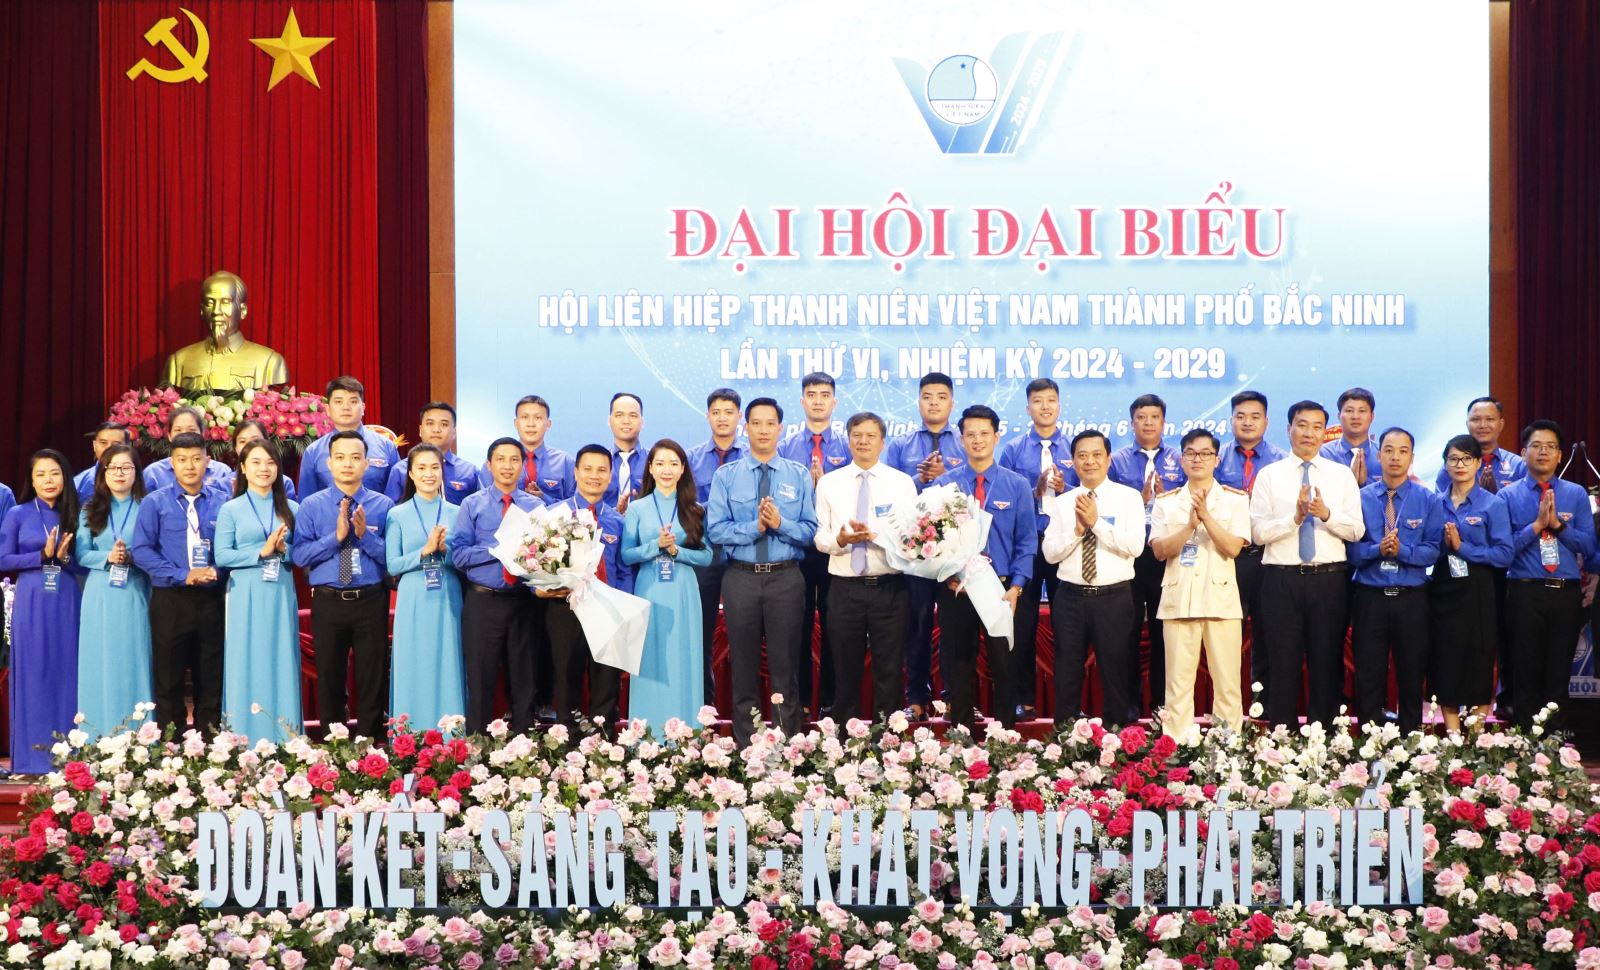 Đại hội Hội Liên hiệp Thanh niên thành phố Bắc Ninh: “Đoàn kết - Sáng tạo - Khát vọng - Phát triển”